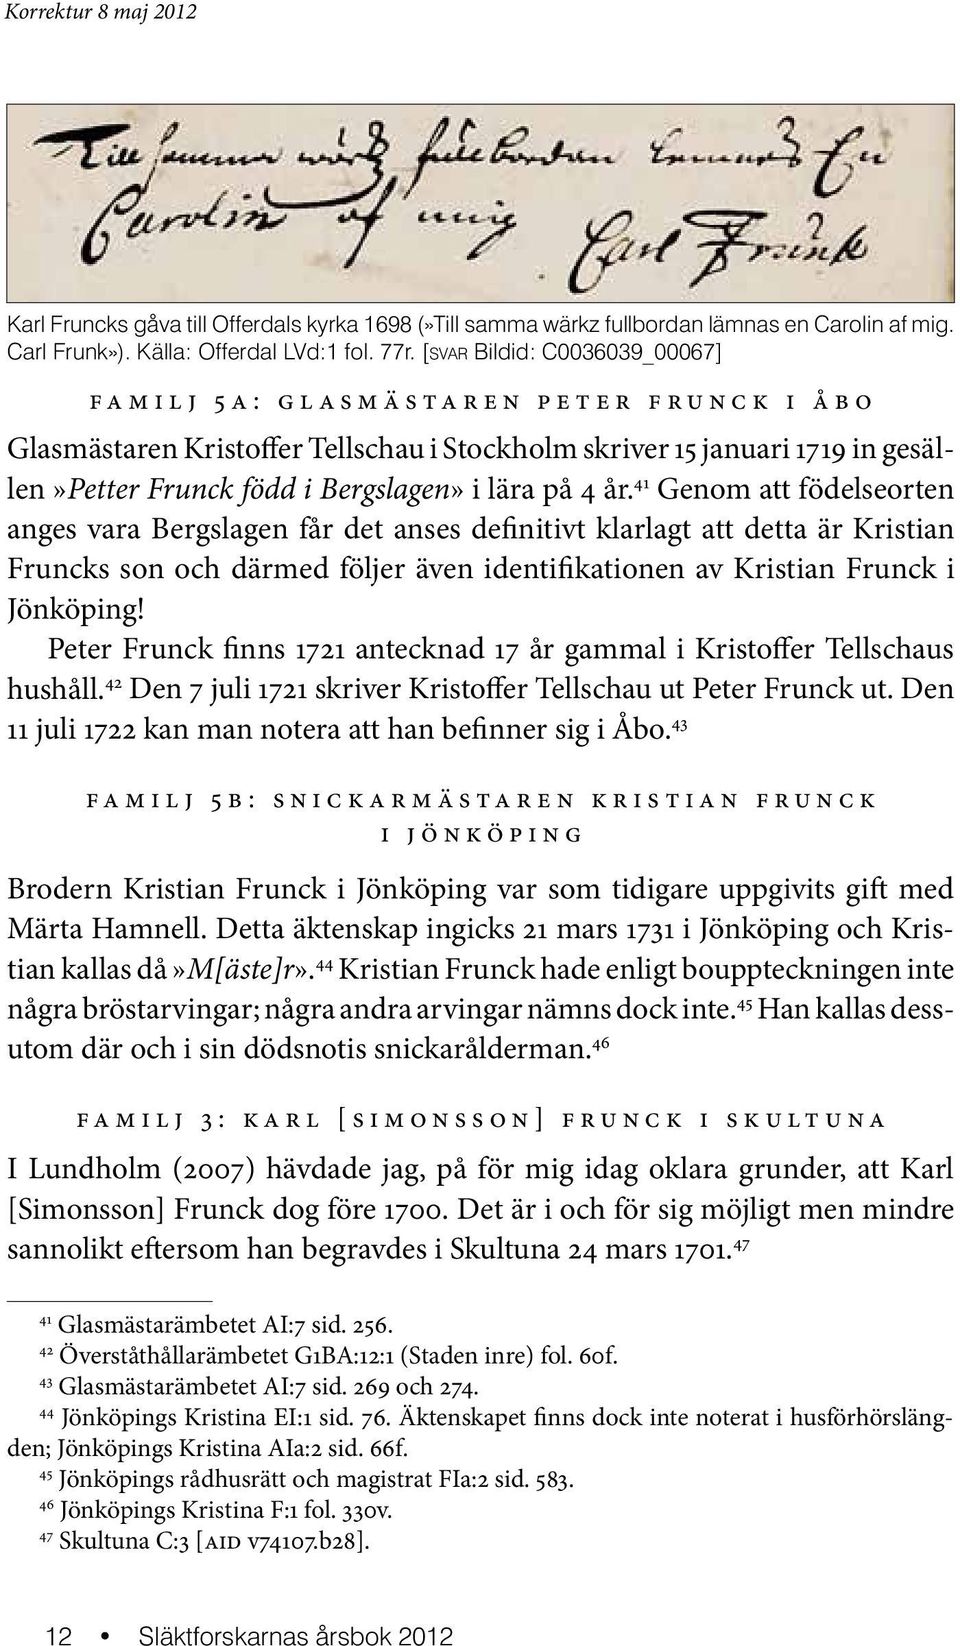 år. 41 Genom att födelseorten anges vara Bergslagen får det anses definitivt klarlagt att detta är Kristian Fruncks son och därmed följer även identifikationen av Kristian Frunck i Jönköping!